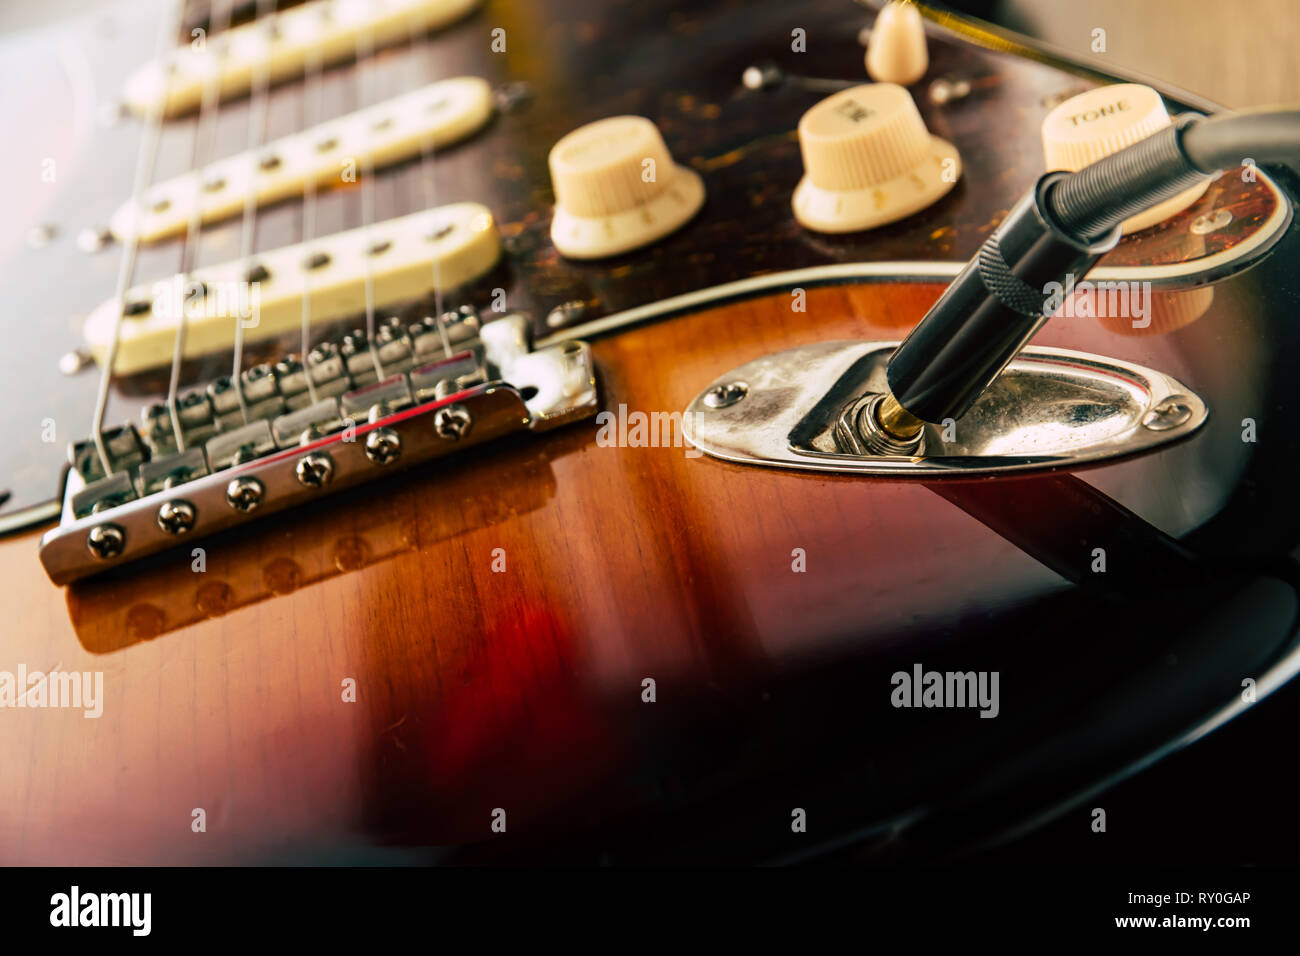 Plus de détails et le branchement du câble guitare jack et le fil. Contrôles de volume et tonalité sur sunburst guitare guitare.Close up Banque D'Images